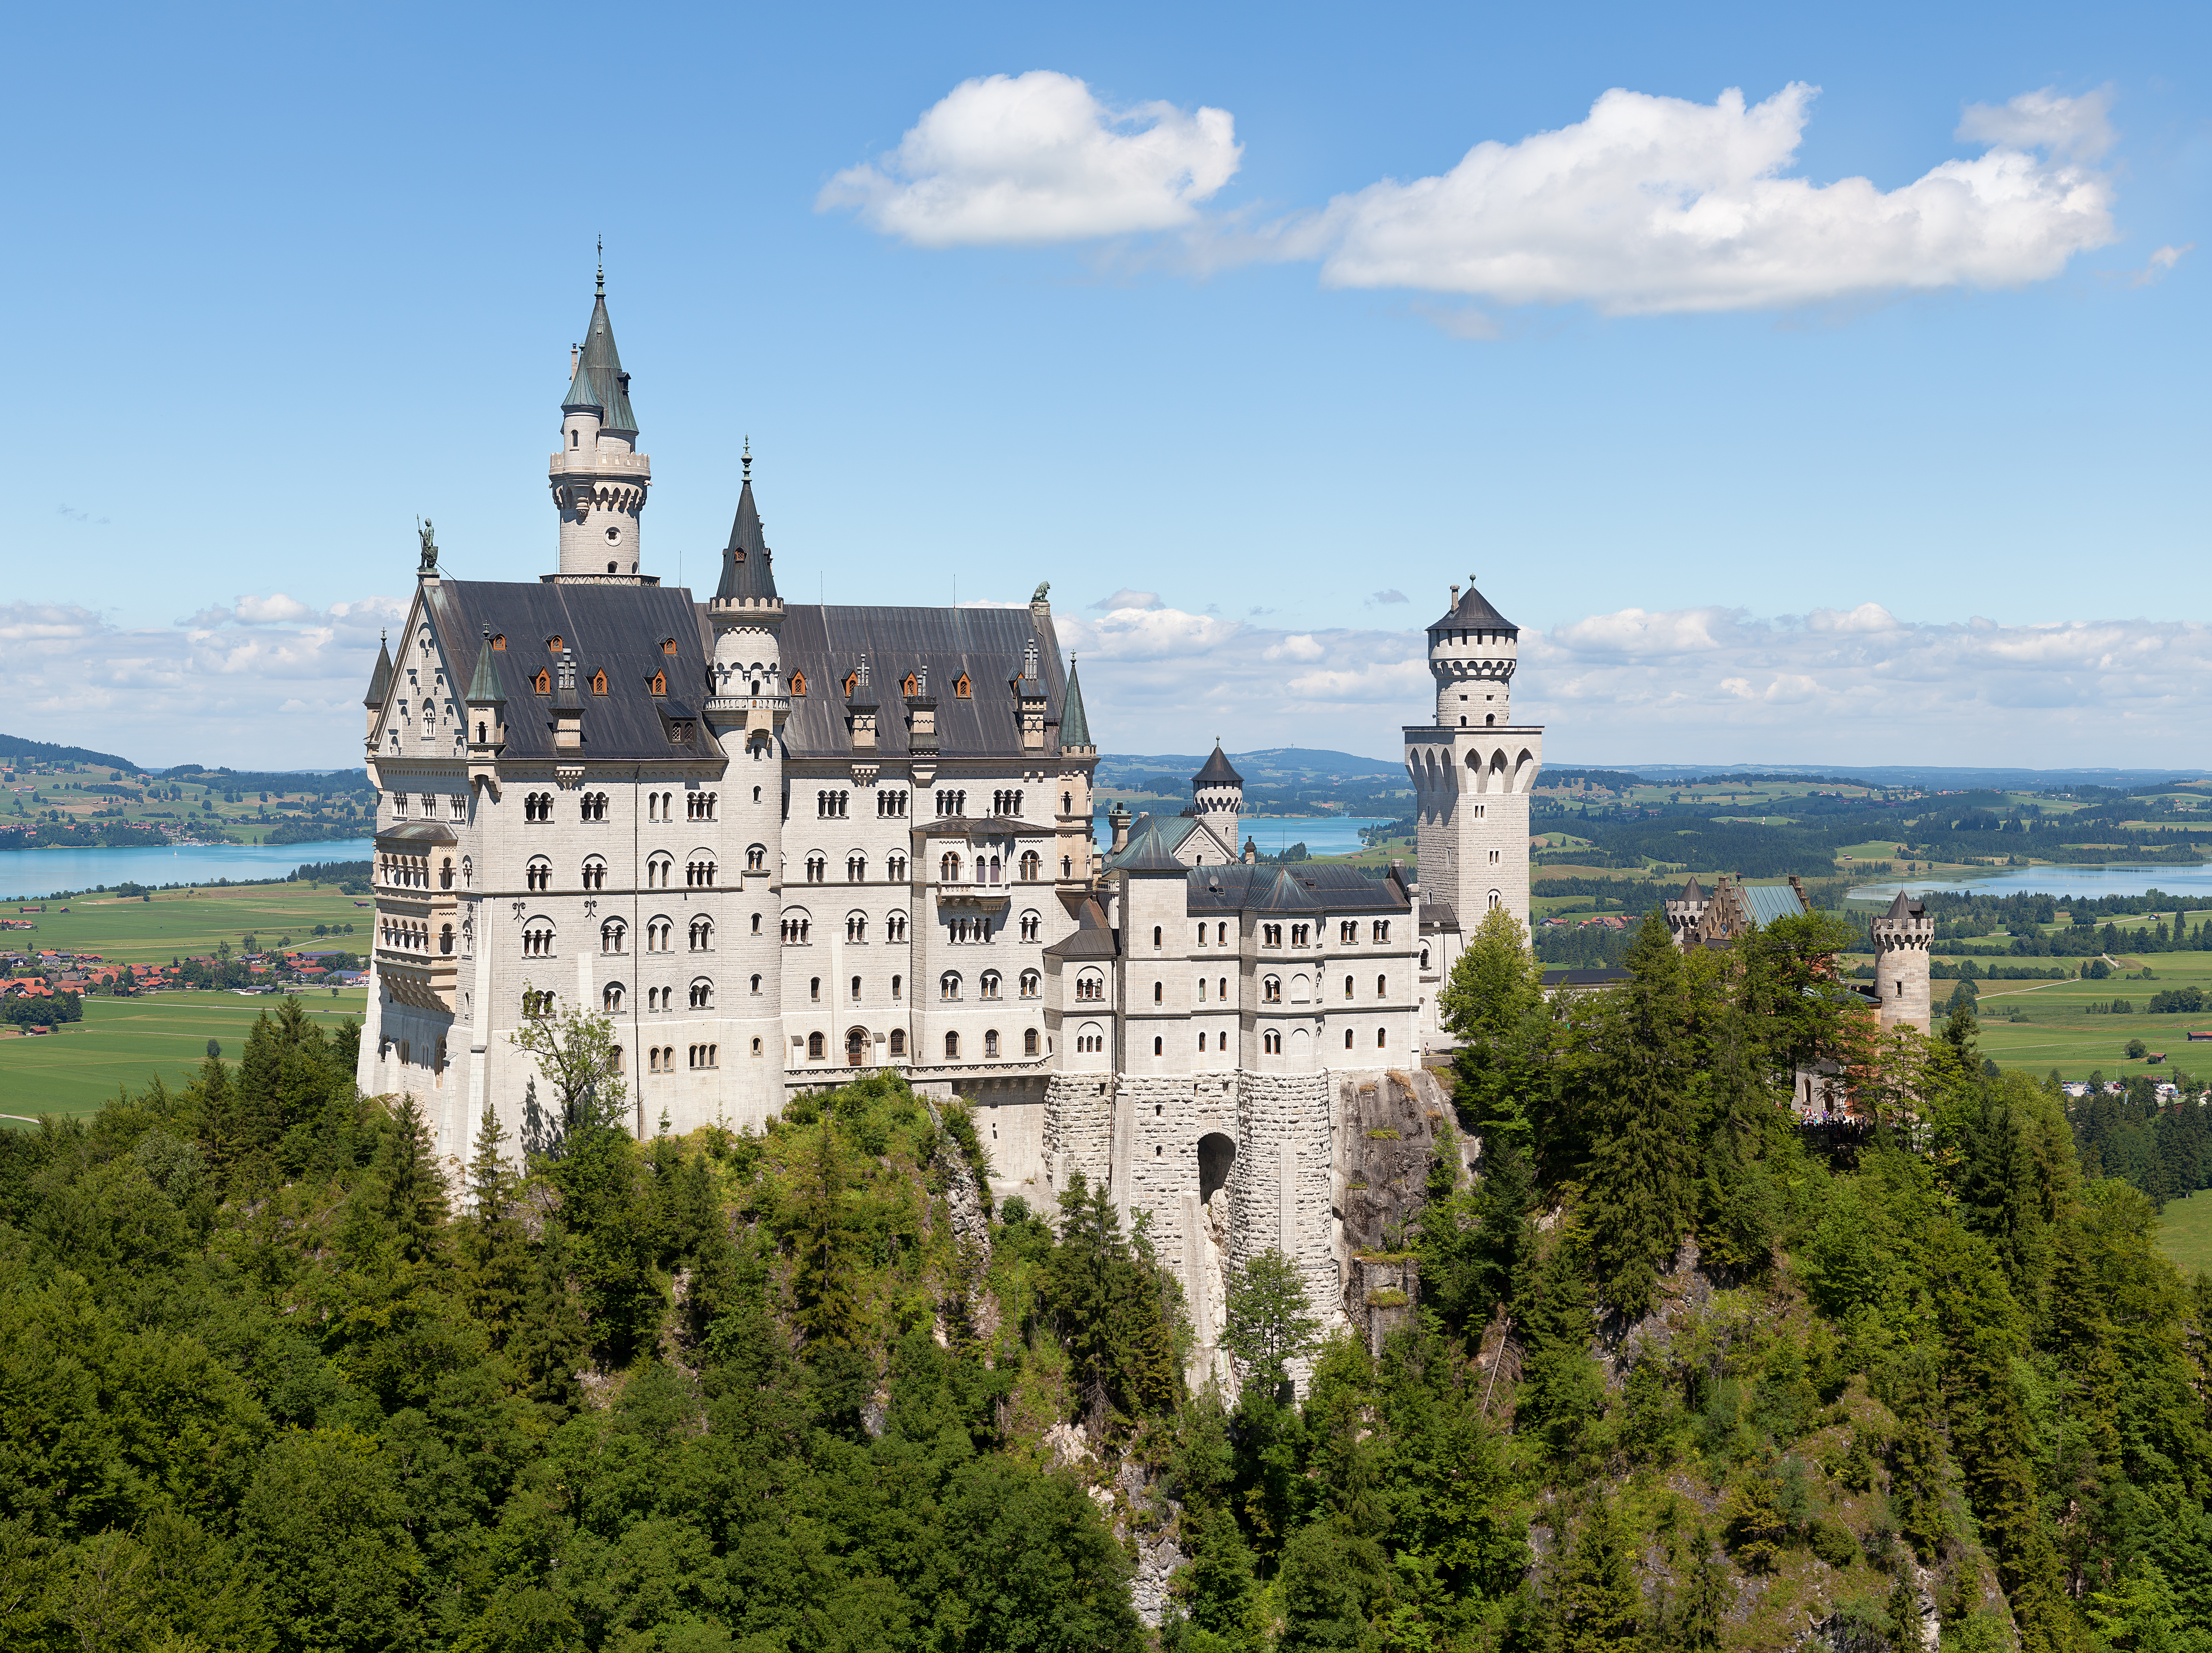 palace clipart castle german